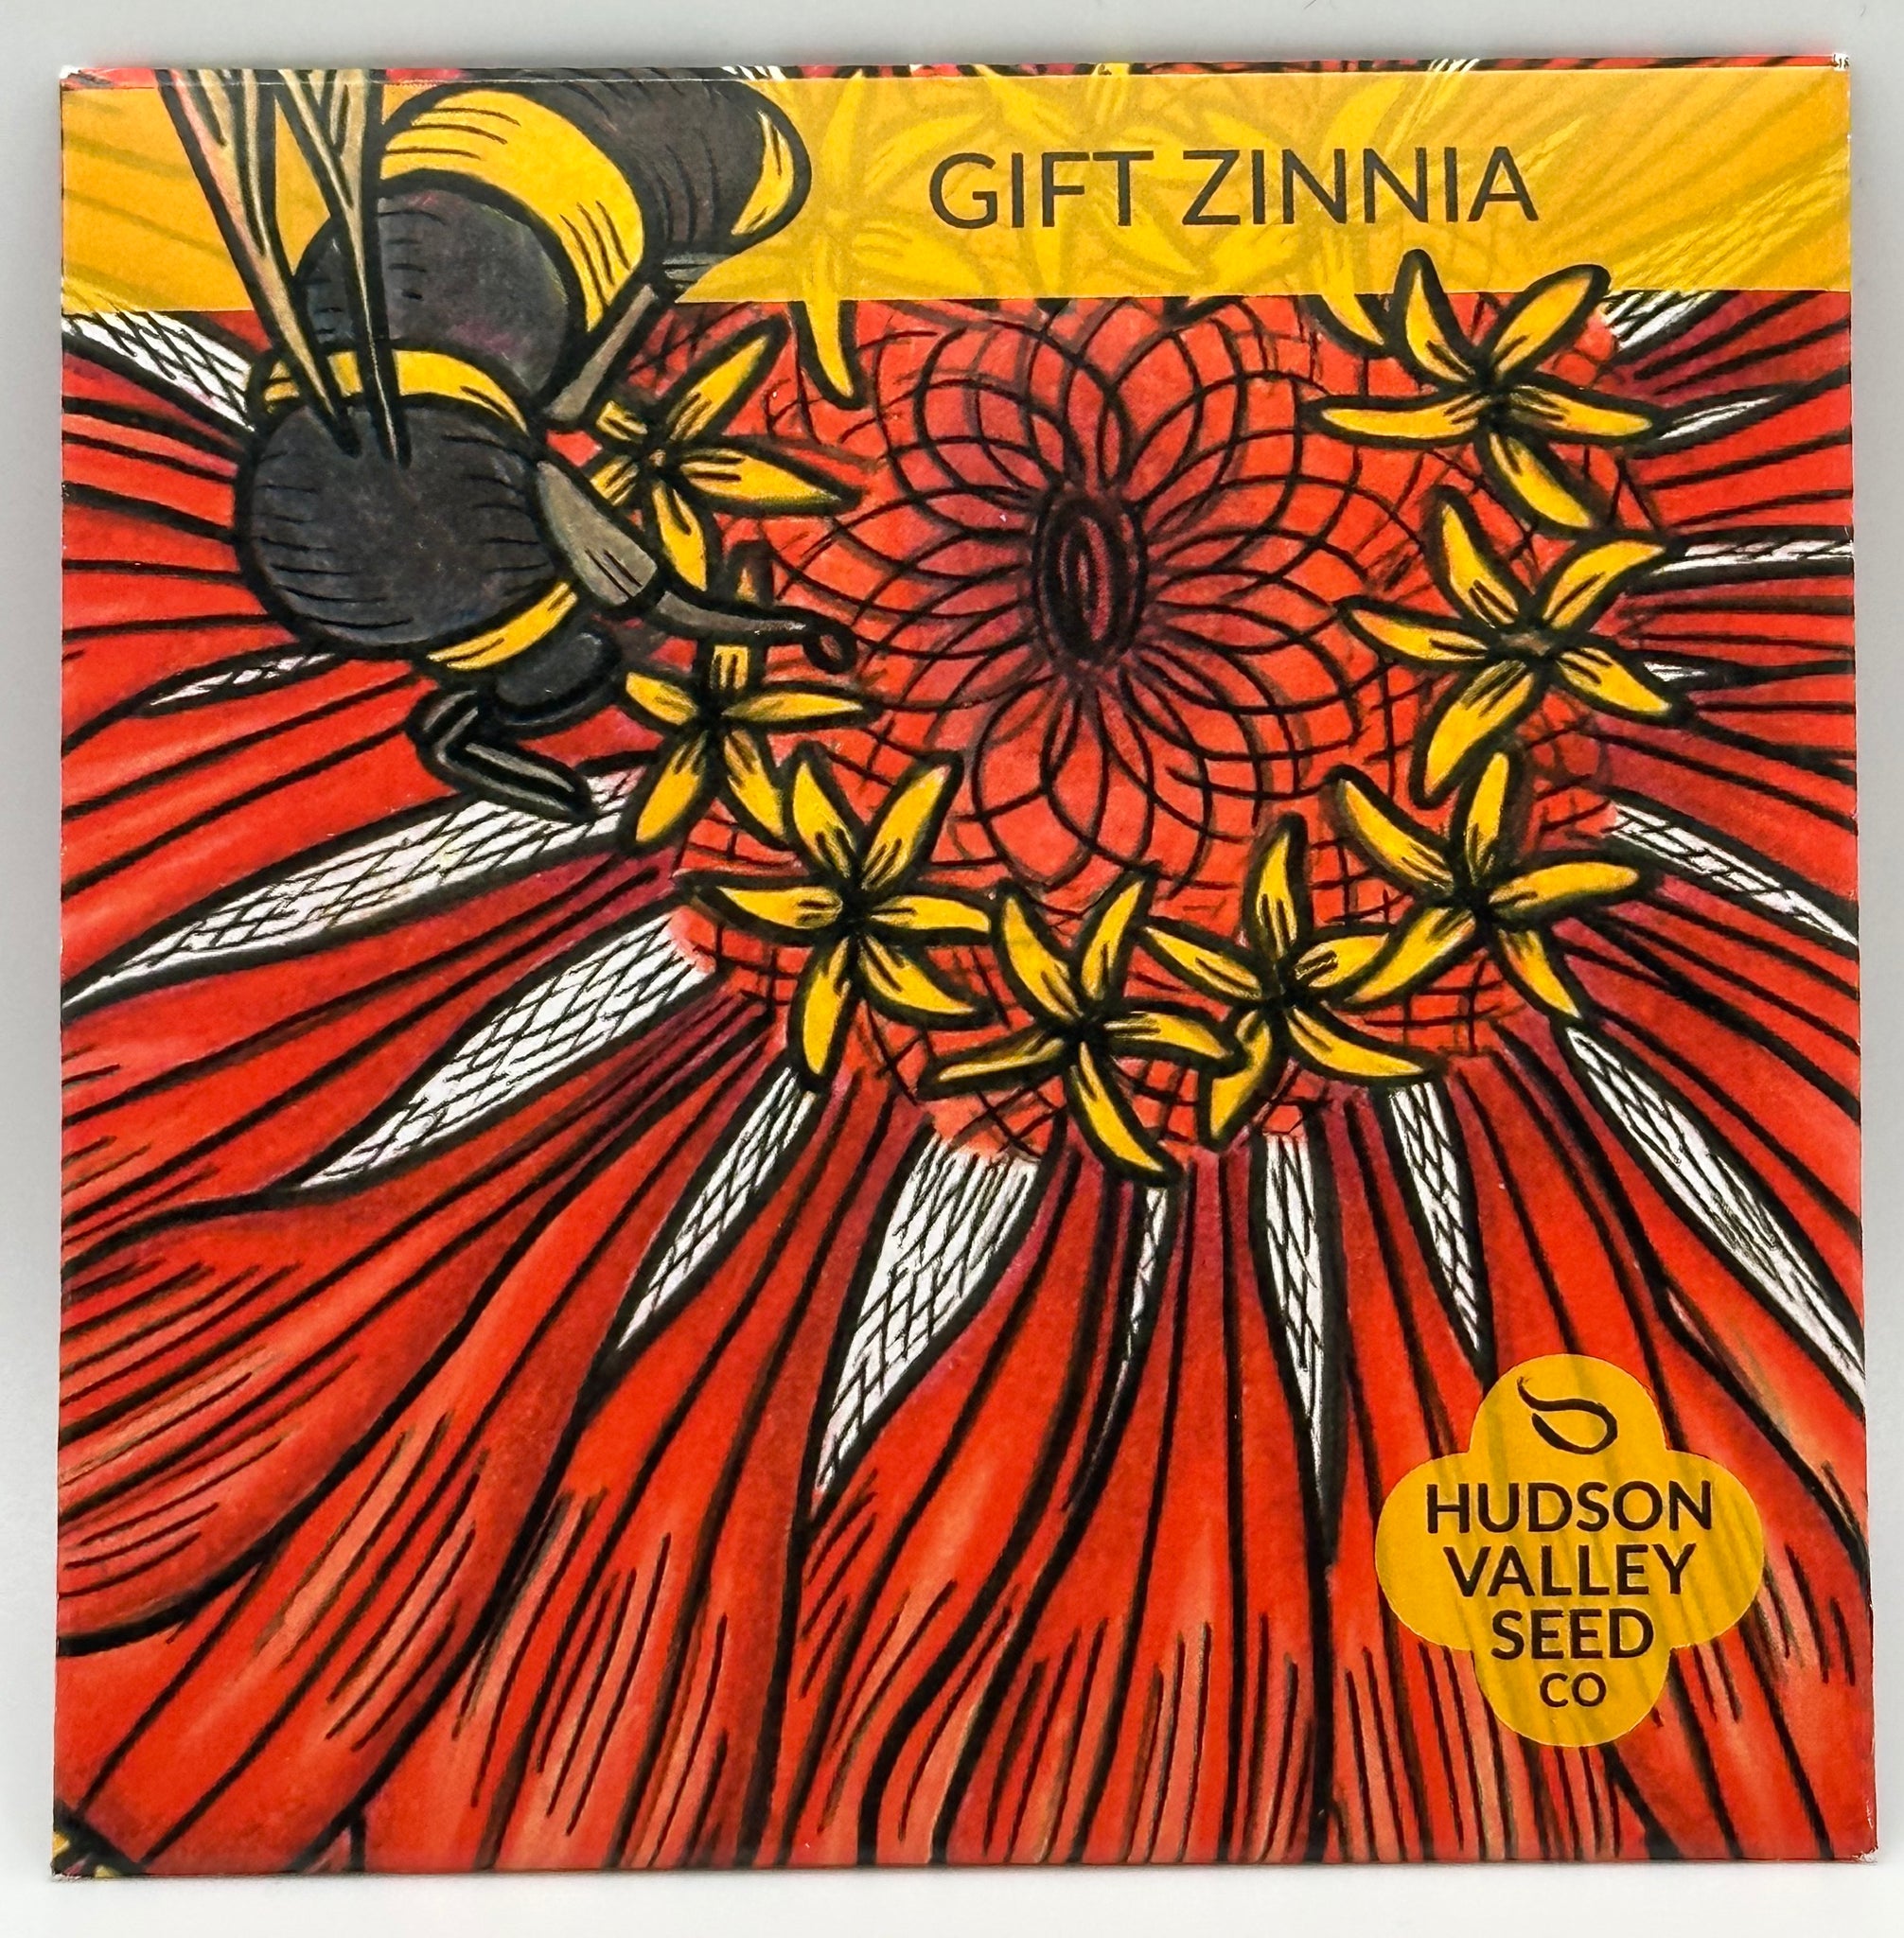 Gift Zinnia